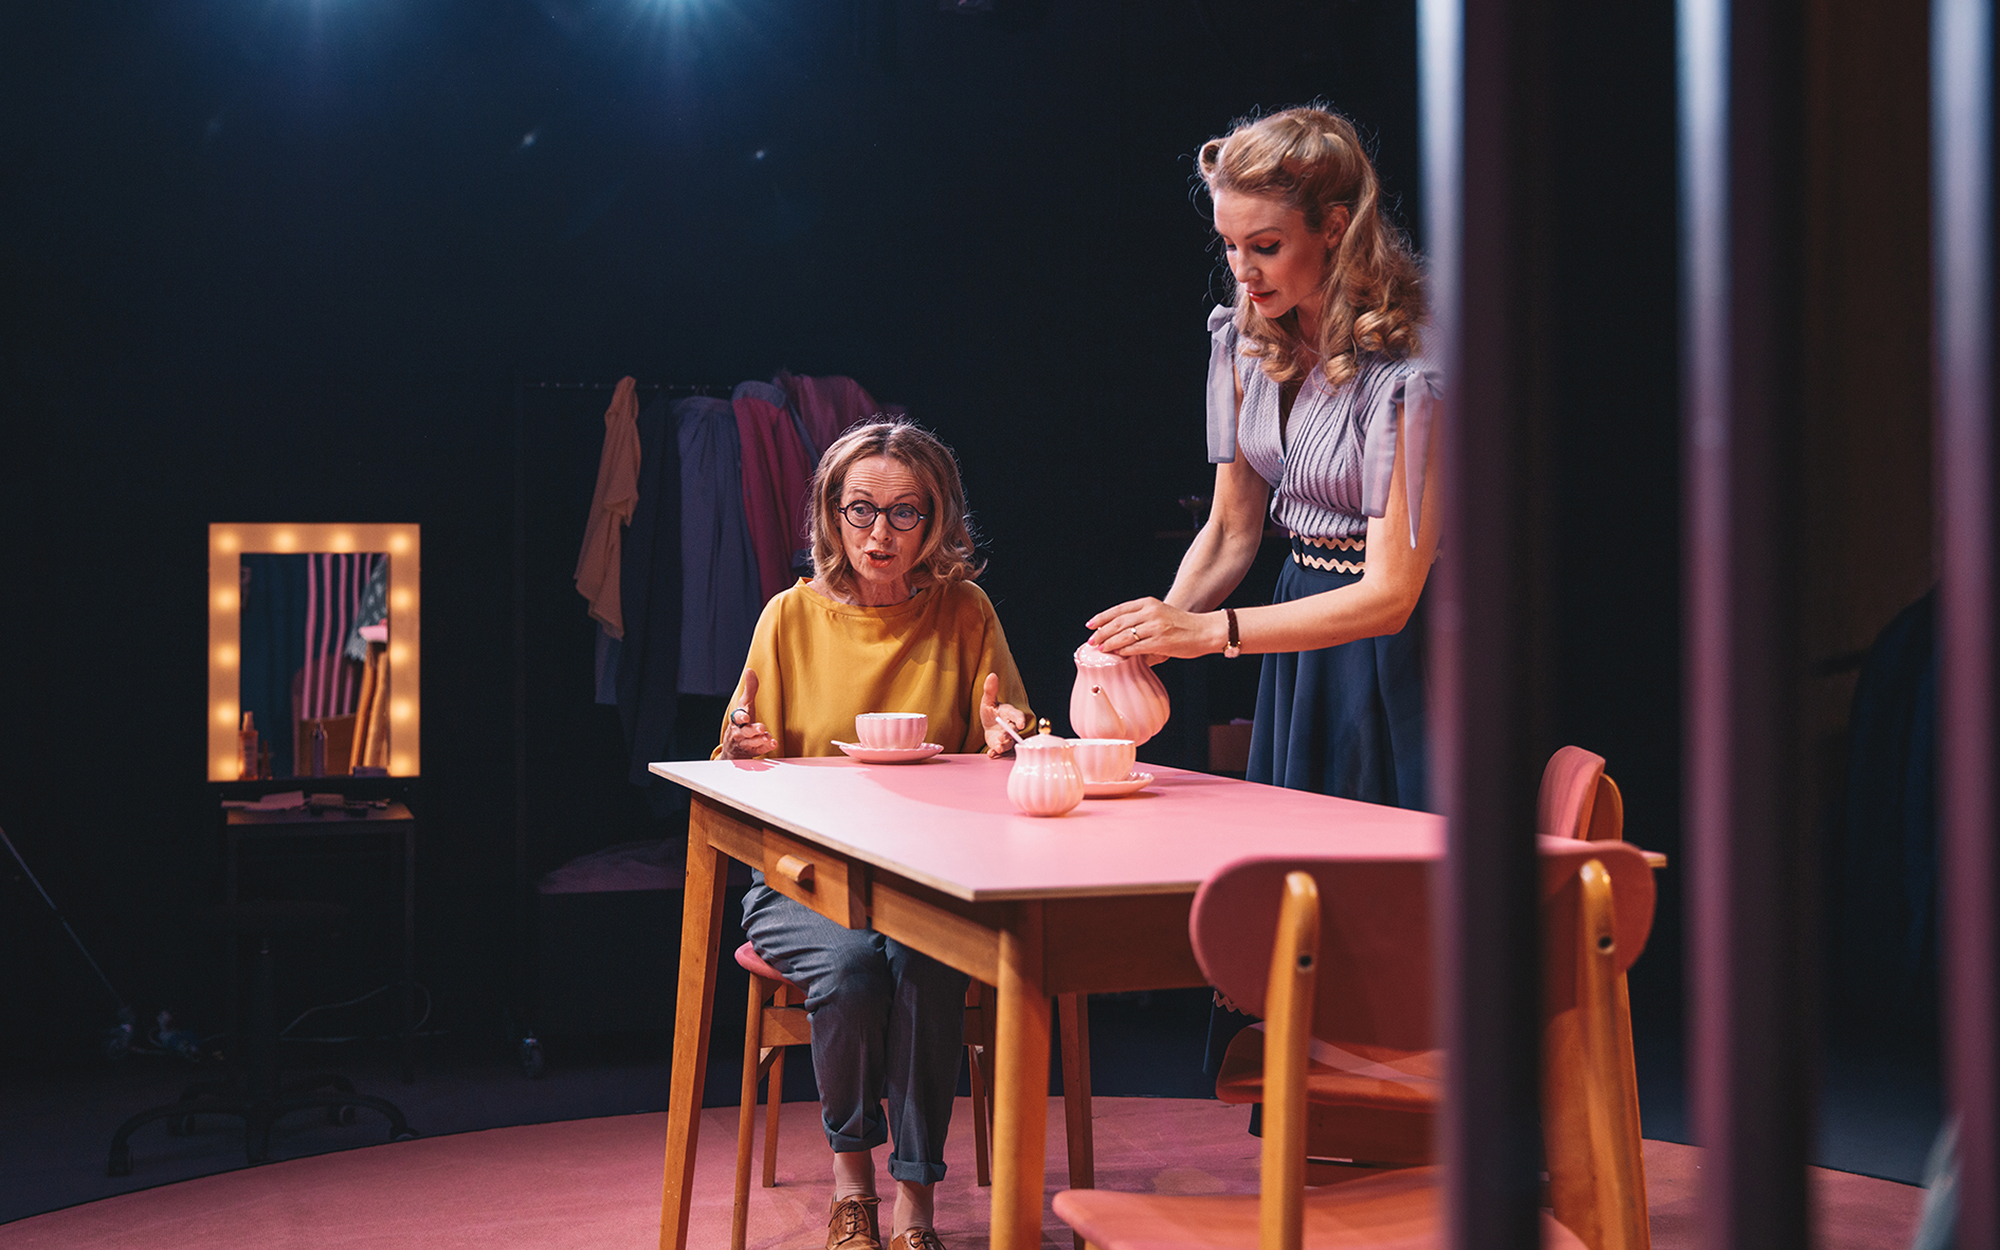 Sylvia (Bernarda Oman) nekaj vneto govori, medtem ko sedi za kuhinjsko mizo, pred njo je rožnati servis za čaj, Judy (Iva Krajnc Bagola) jo posluša in si nataka čaj. Avtor fotografije: Peter Giodani.